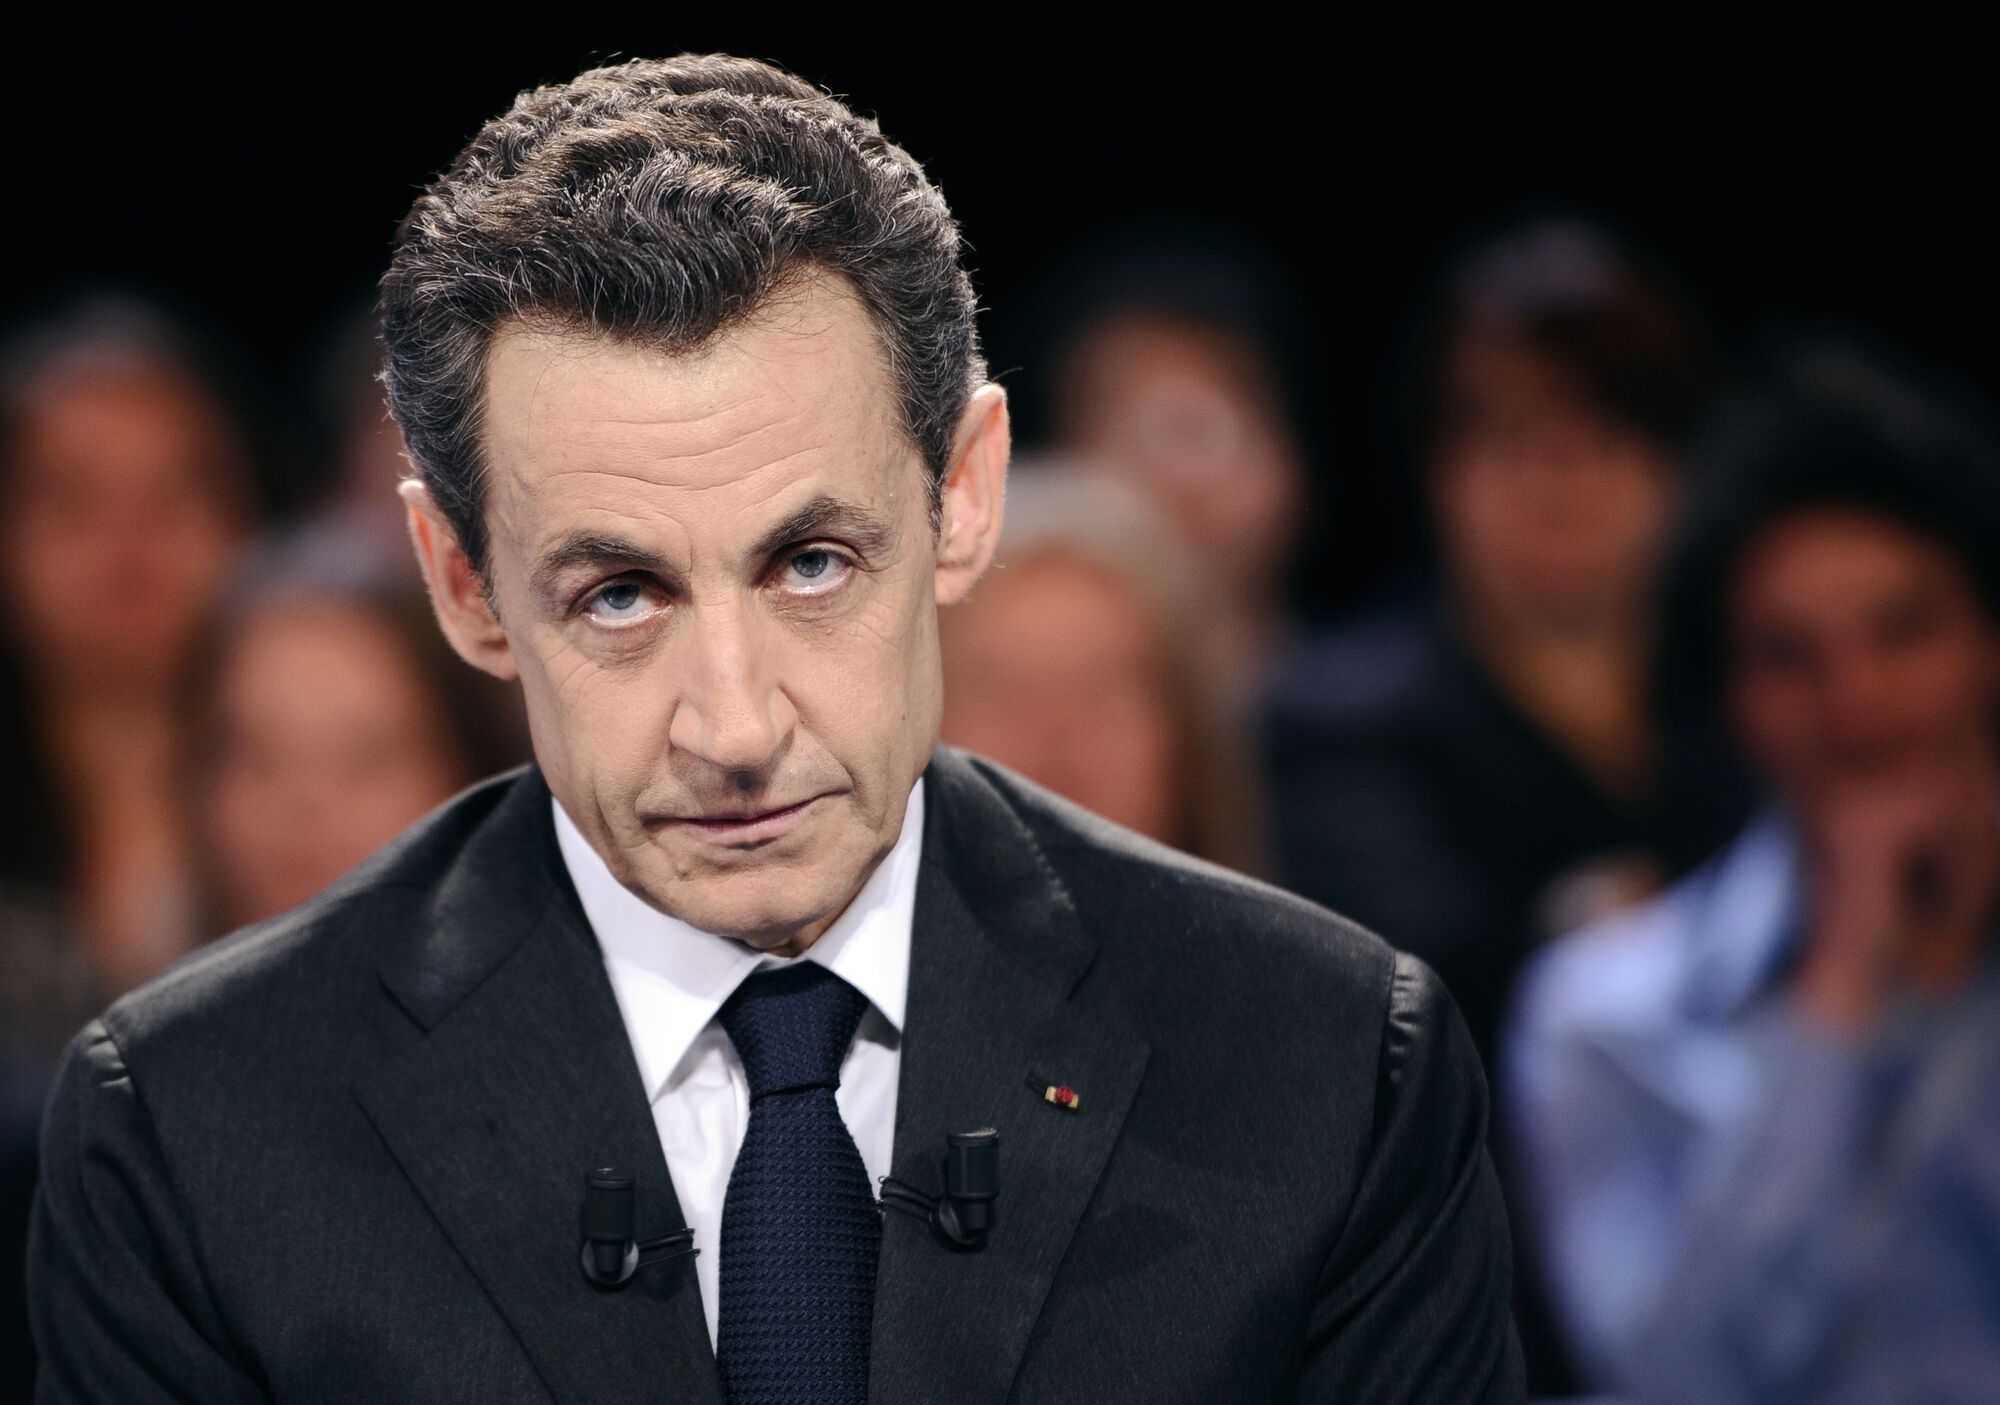 Во Франции задержали экс-президента Саркози